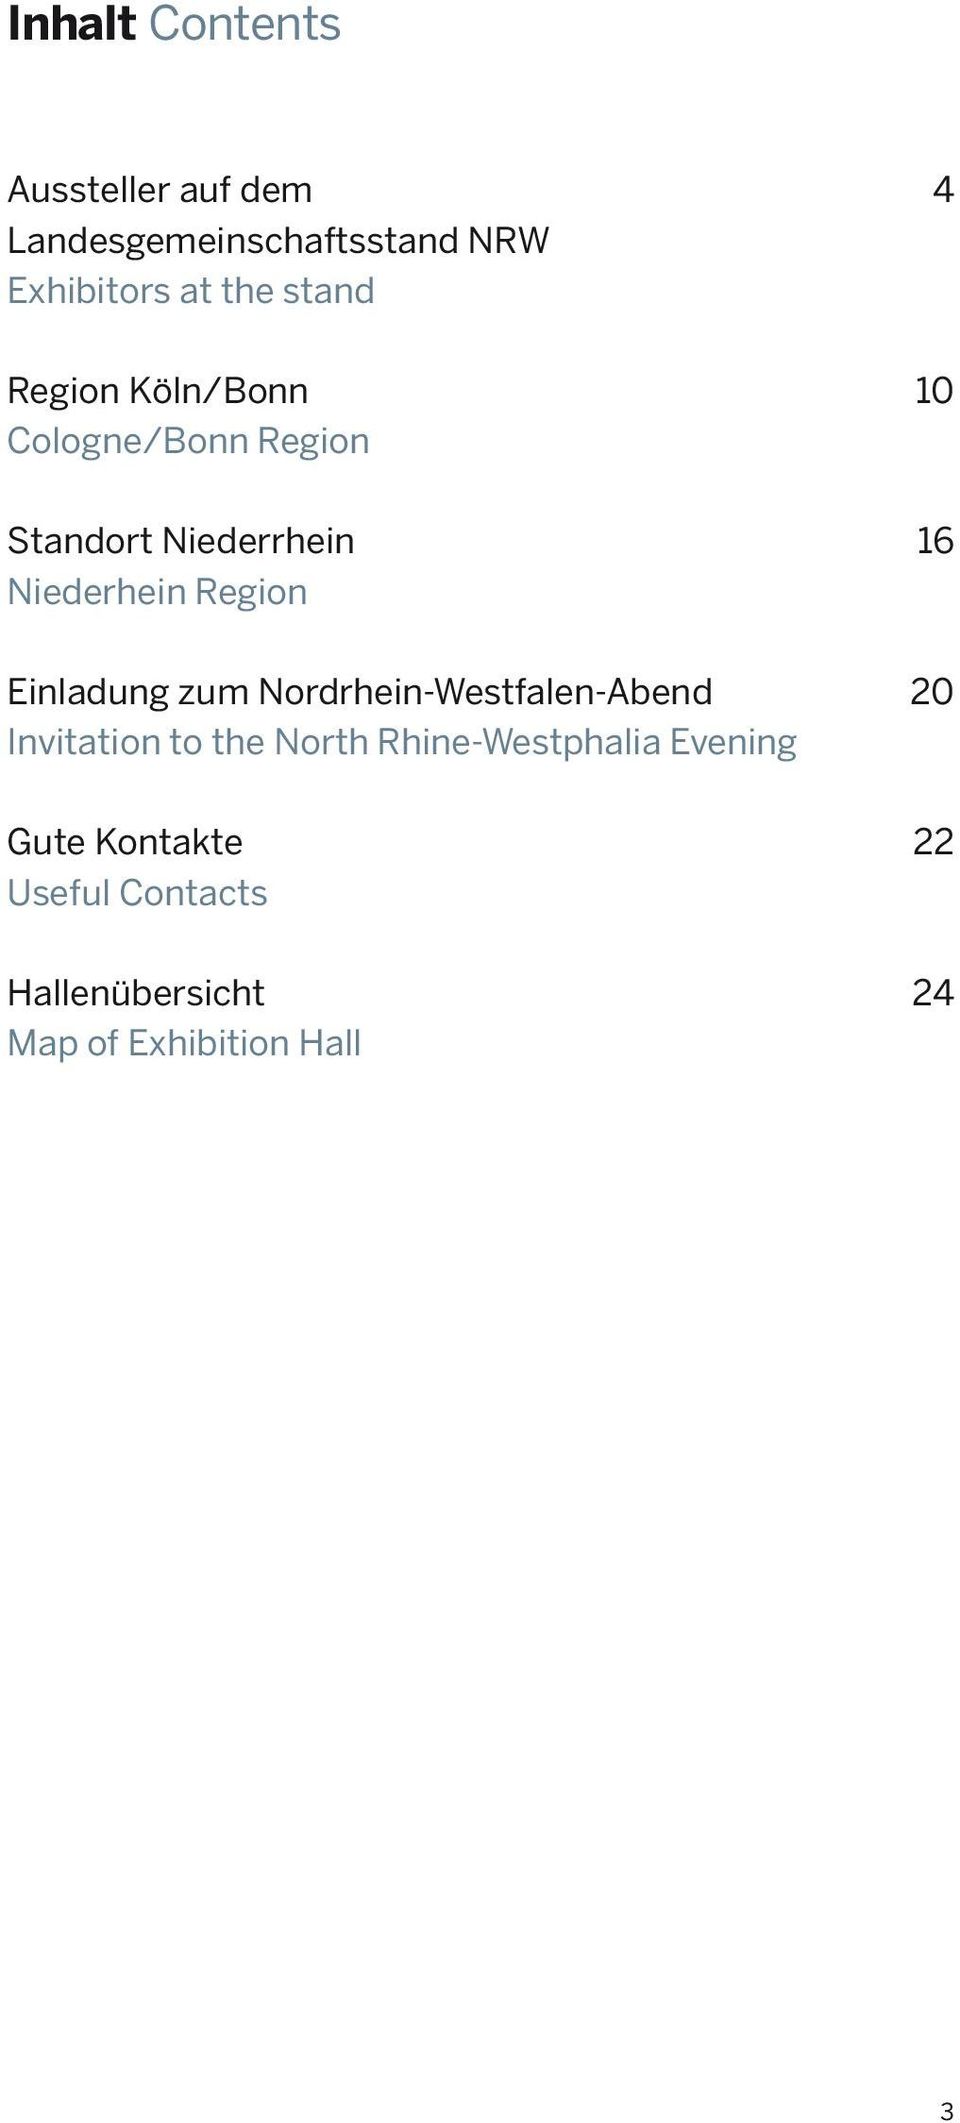 Region Einladung zum Nordrhein-Westfalen-Abend 20 Invitation to the North